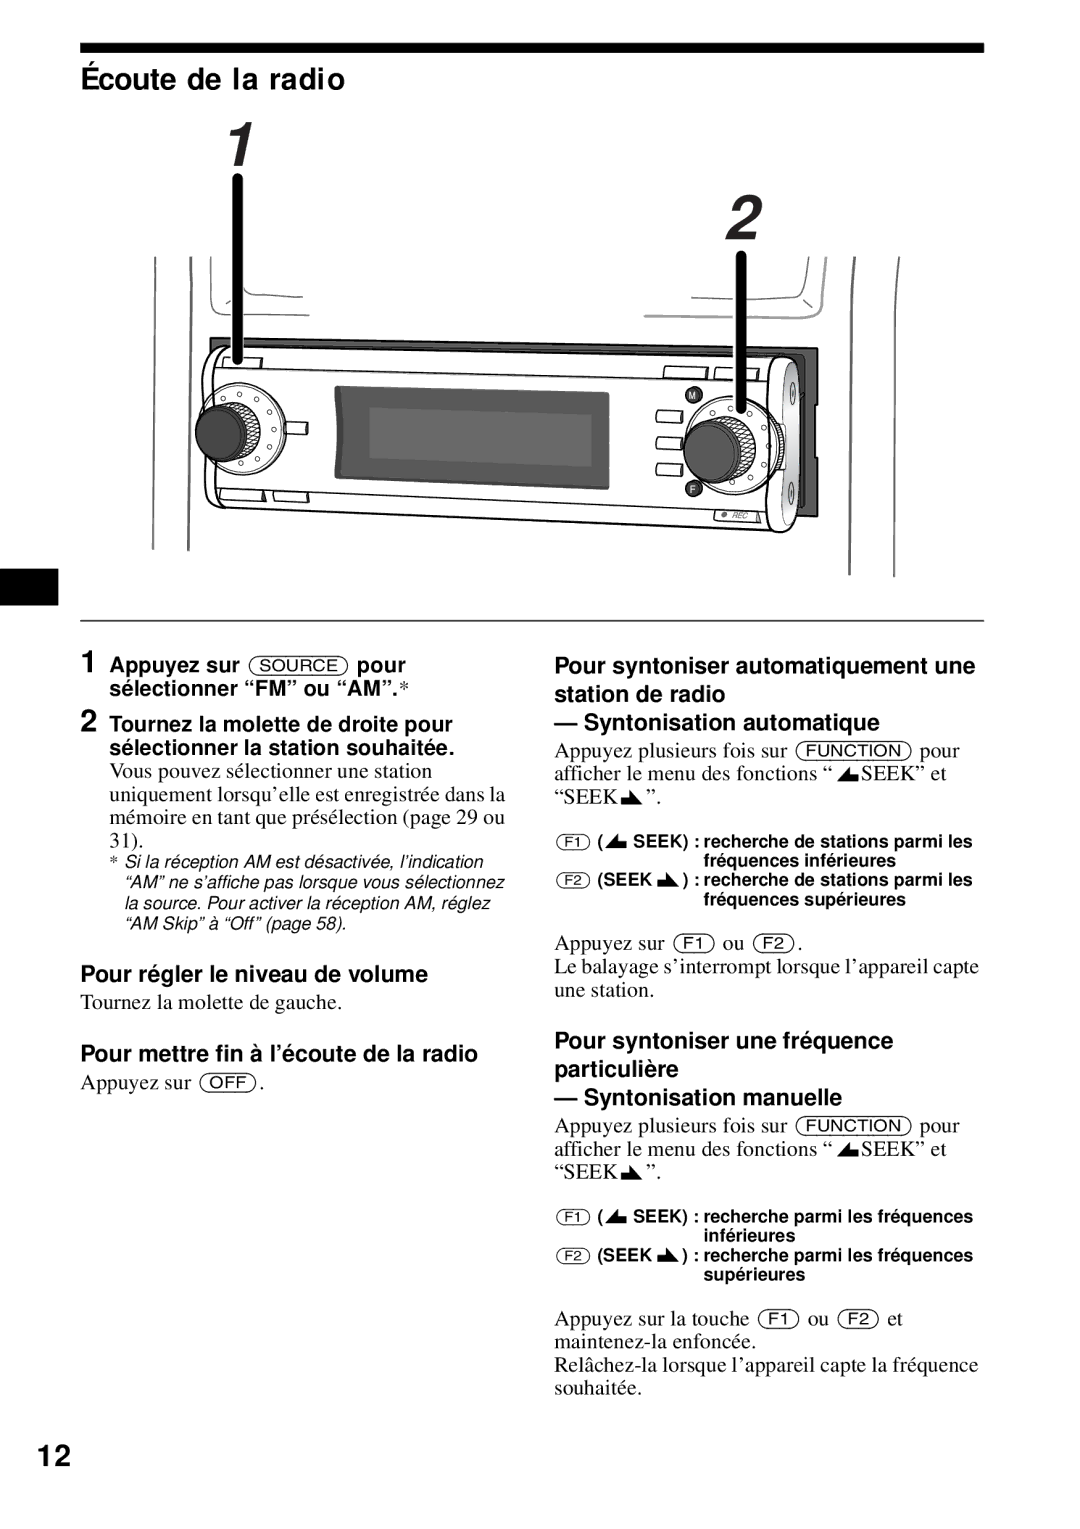 Sony MEX-1HD operating instructions Écoute de la radio, Pour mettre fin à l’écoute de la radio 